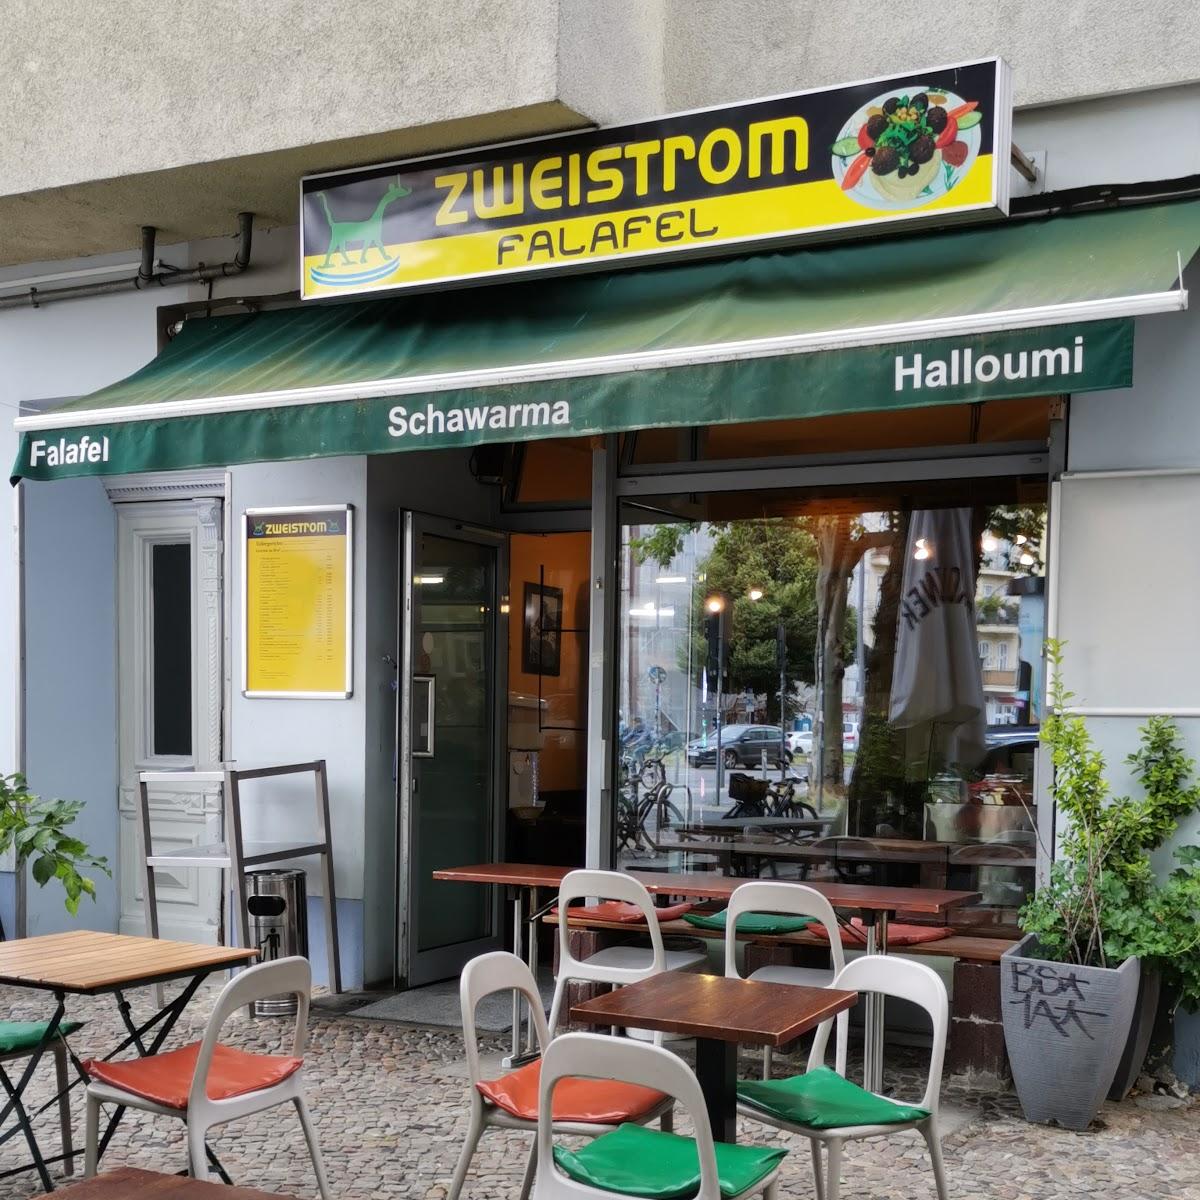 Restaurant "Zweistrom" in Berlin